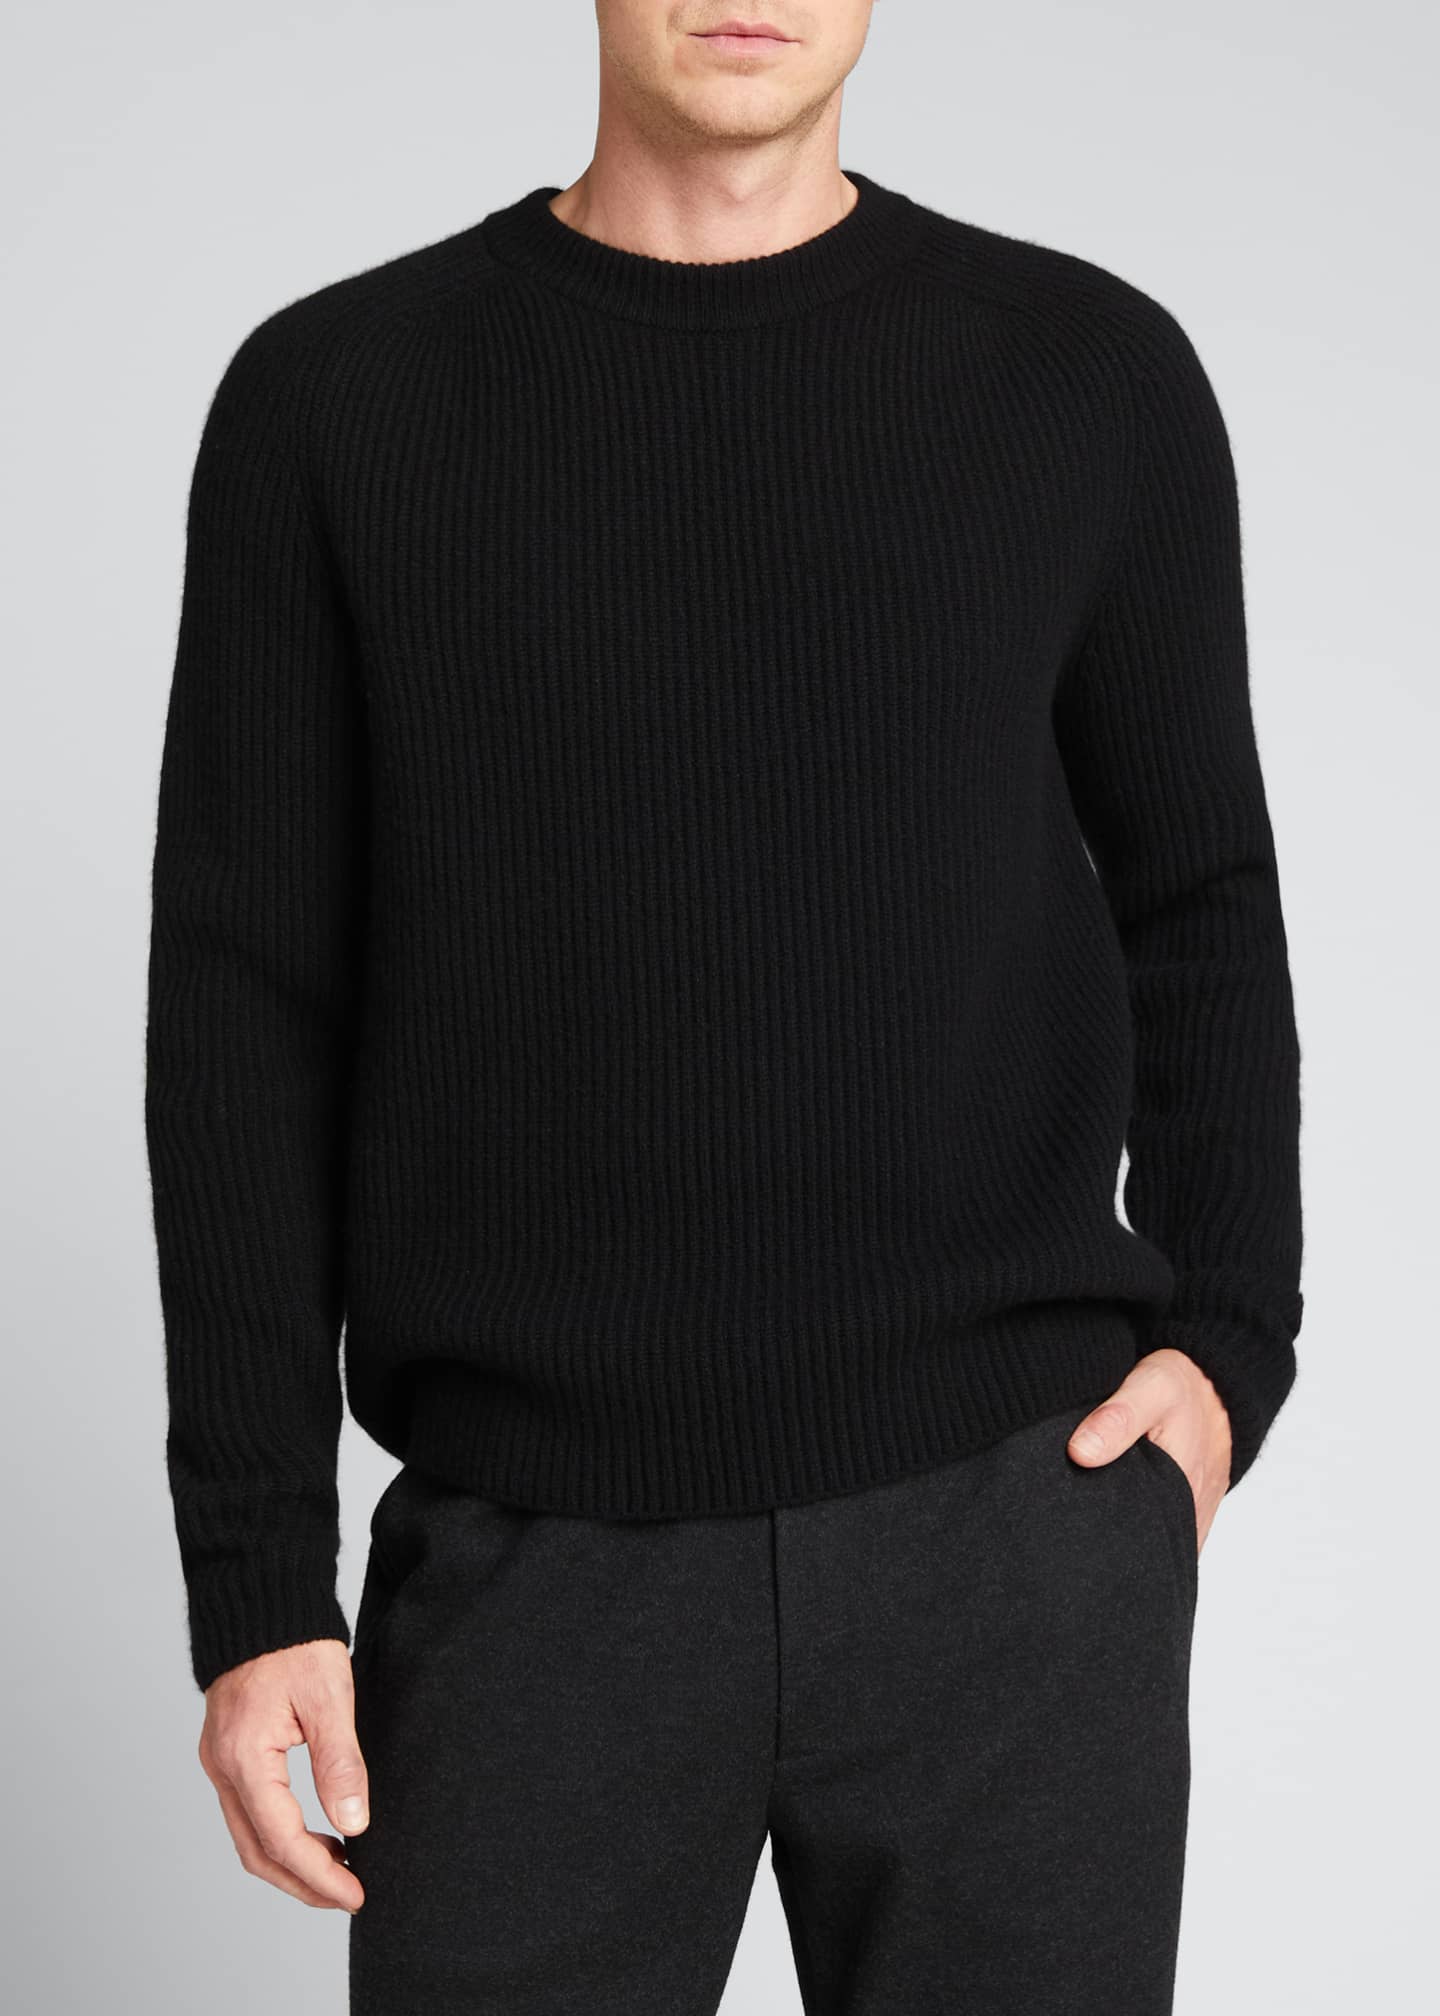 THE ROW Men's Benji Crewneck Cashmere Sweater - Bergdorf Goodman